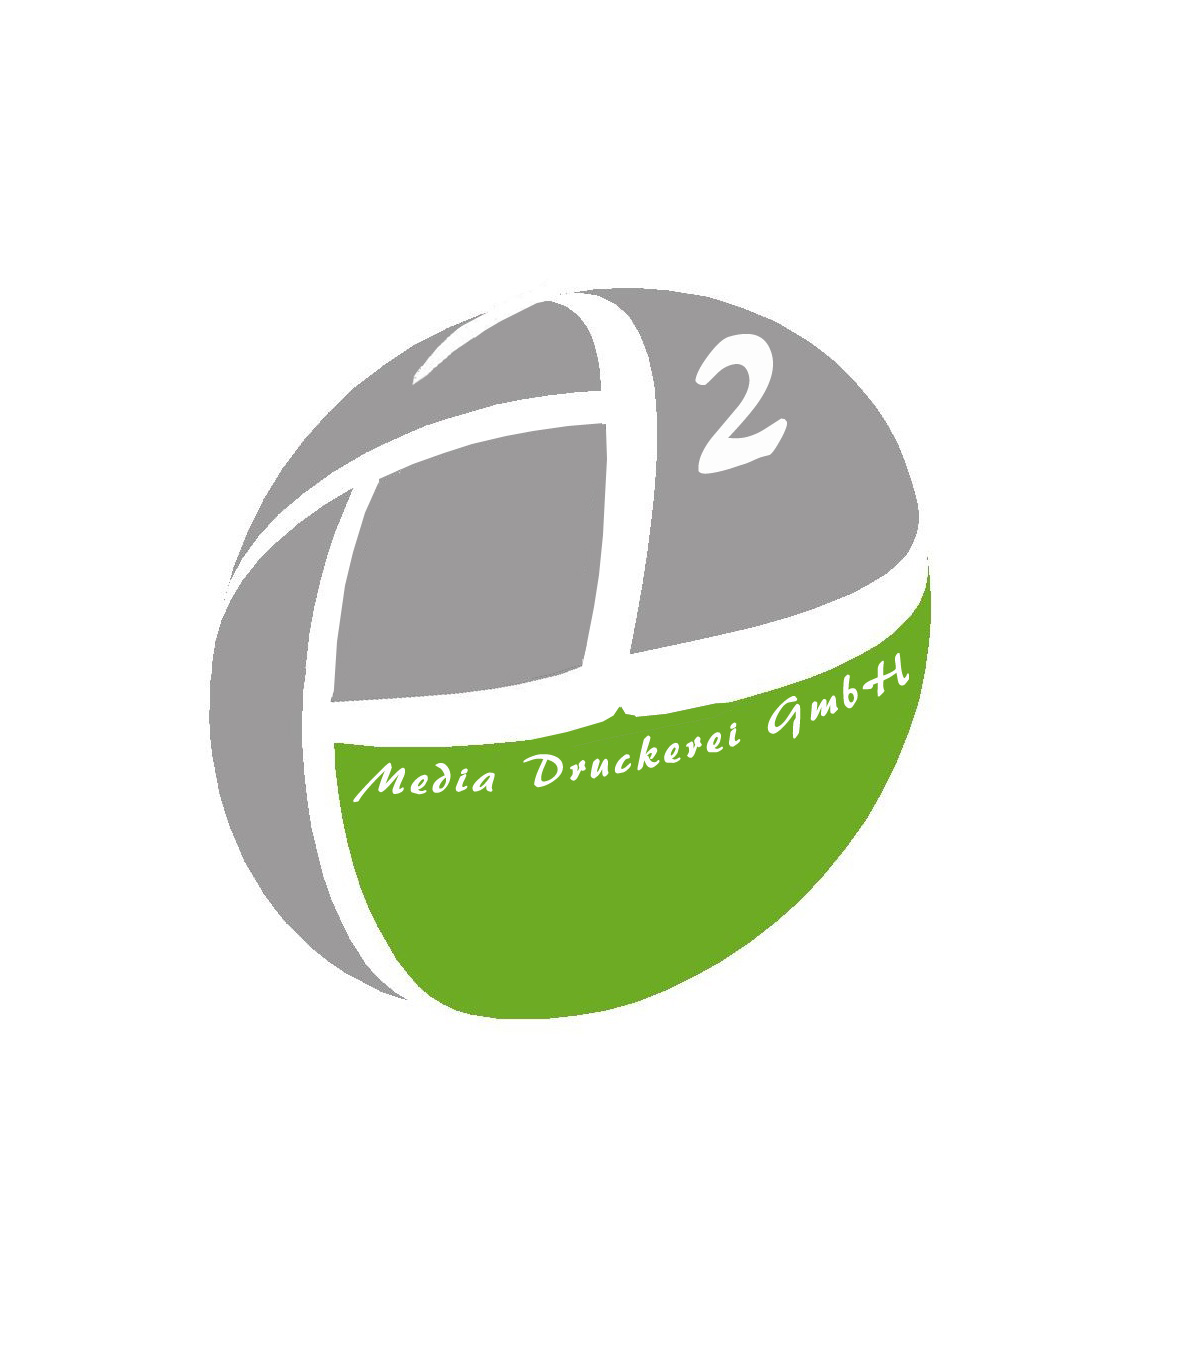 A2 Media Druckerei GmbH Logo